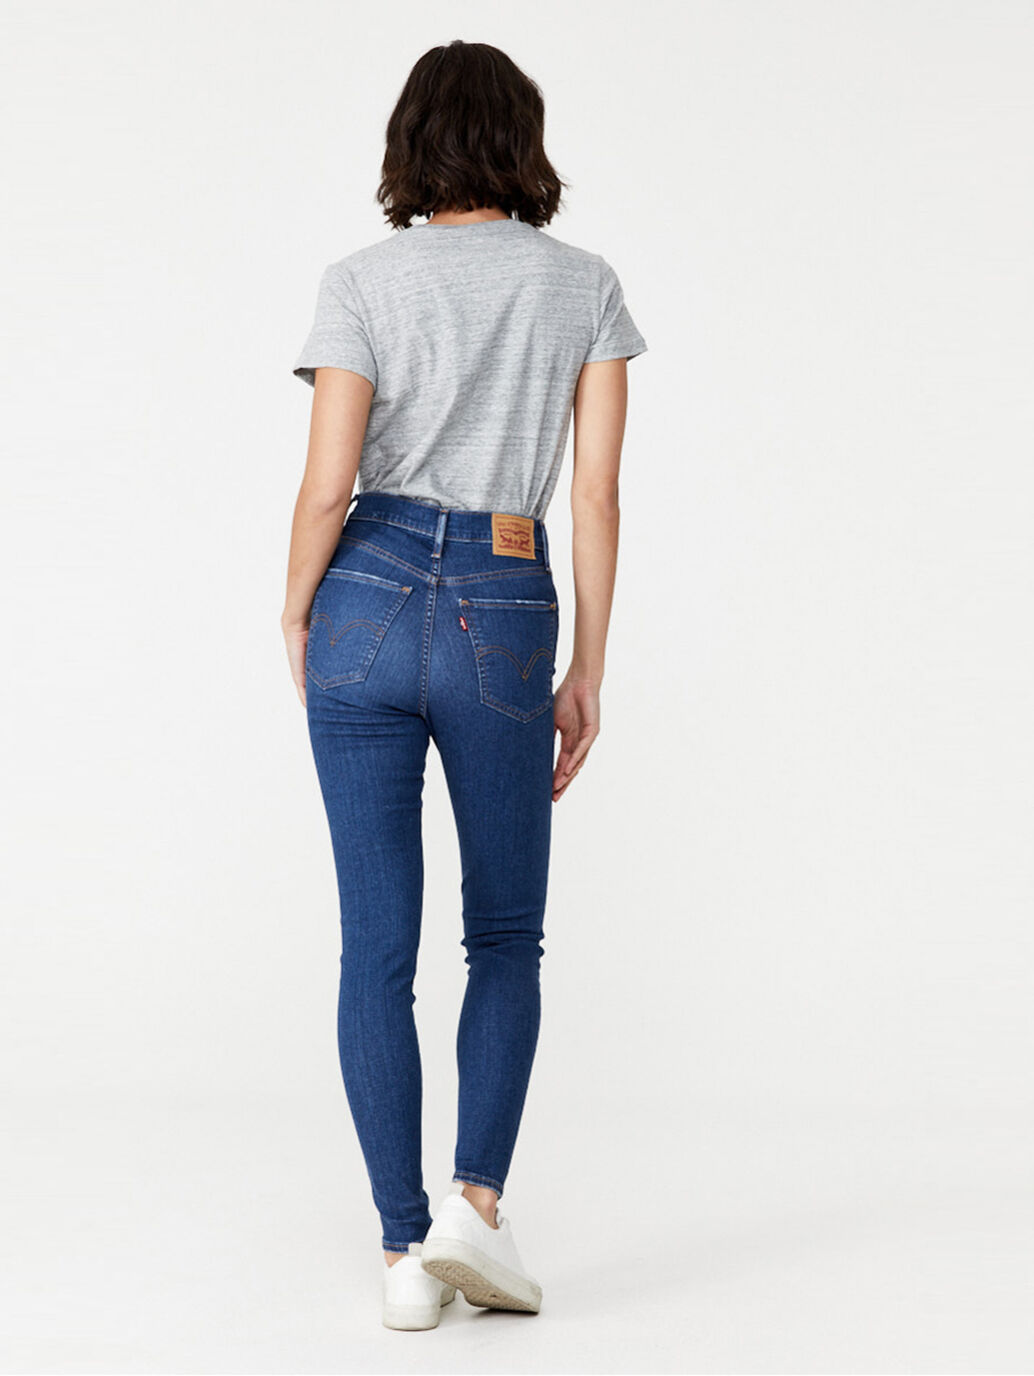 mile high super skinny levis jeans